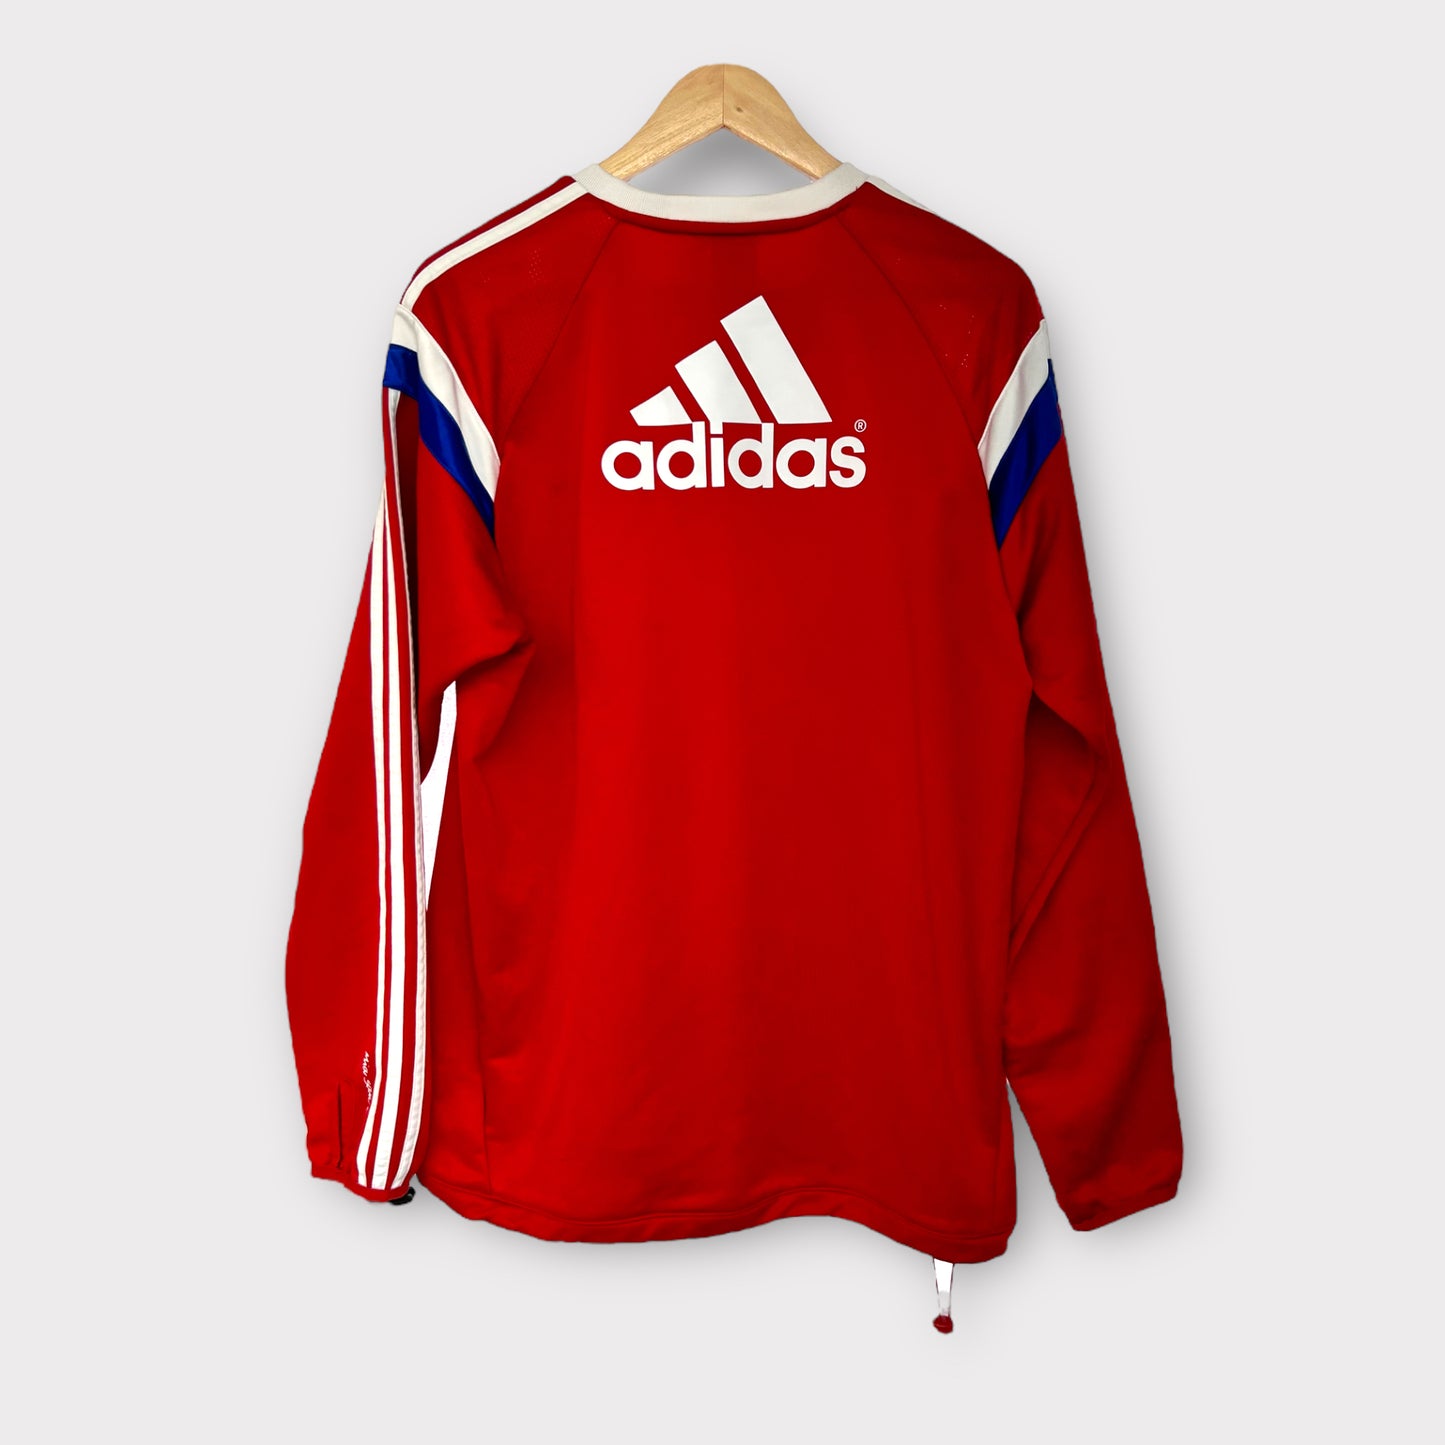 Bayern Munich 2014/15 Adidas Tracksuit Top (Large)